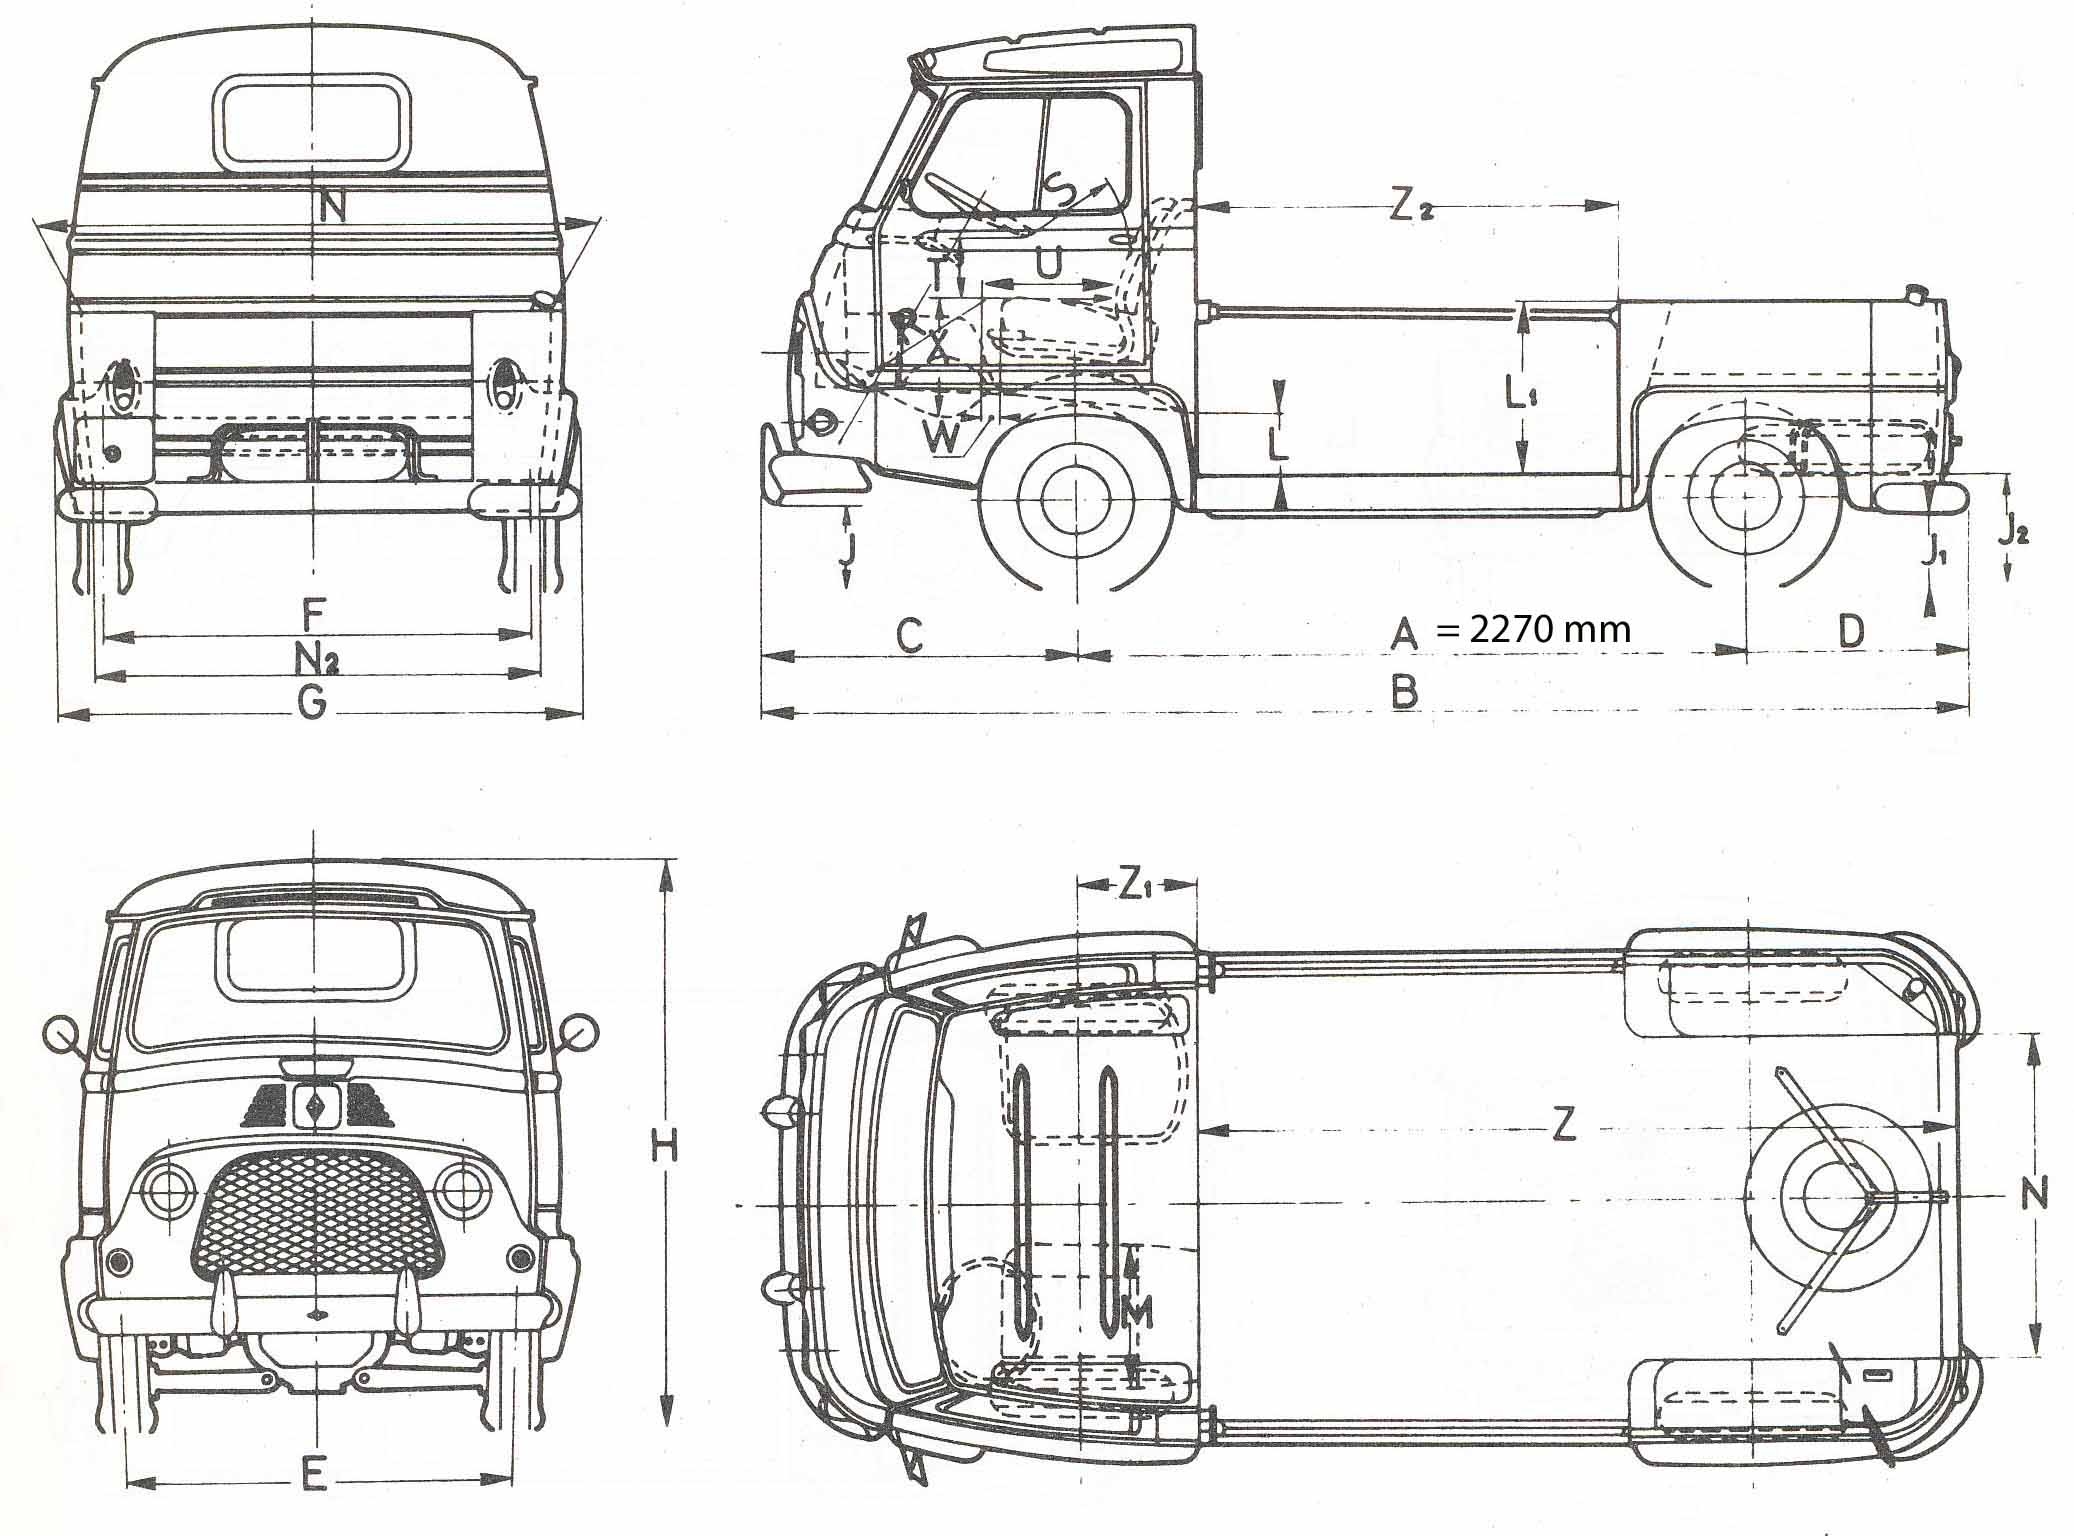 Renault Estafette blueprint